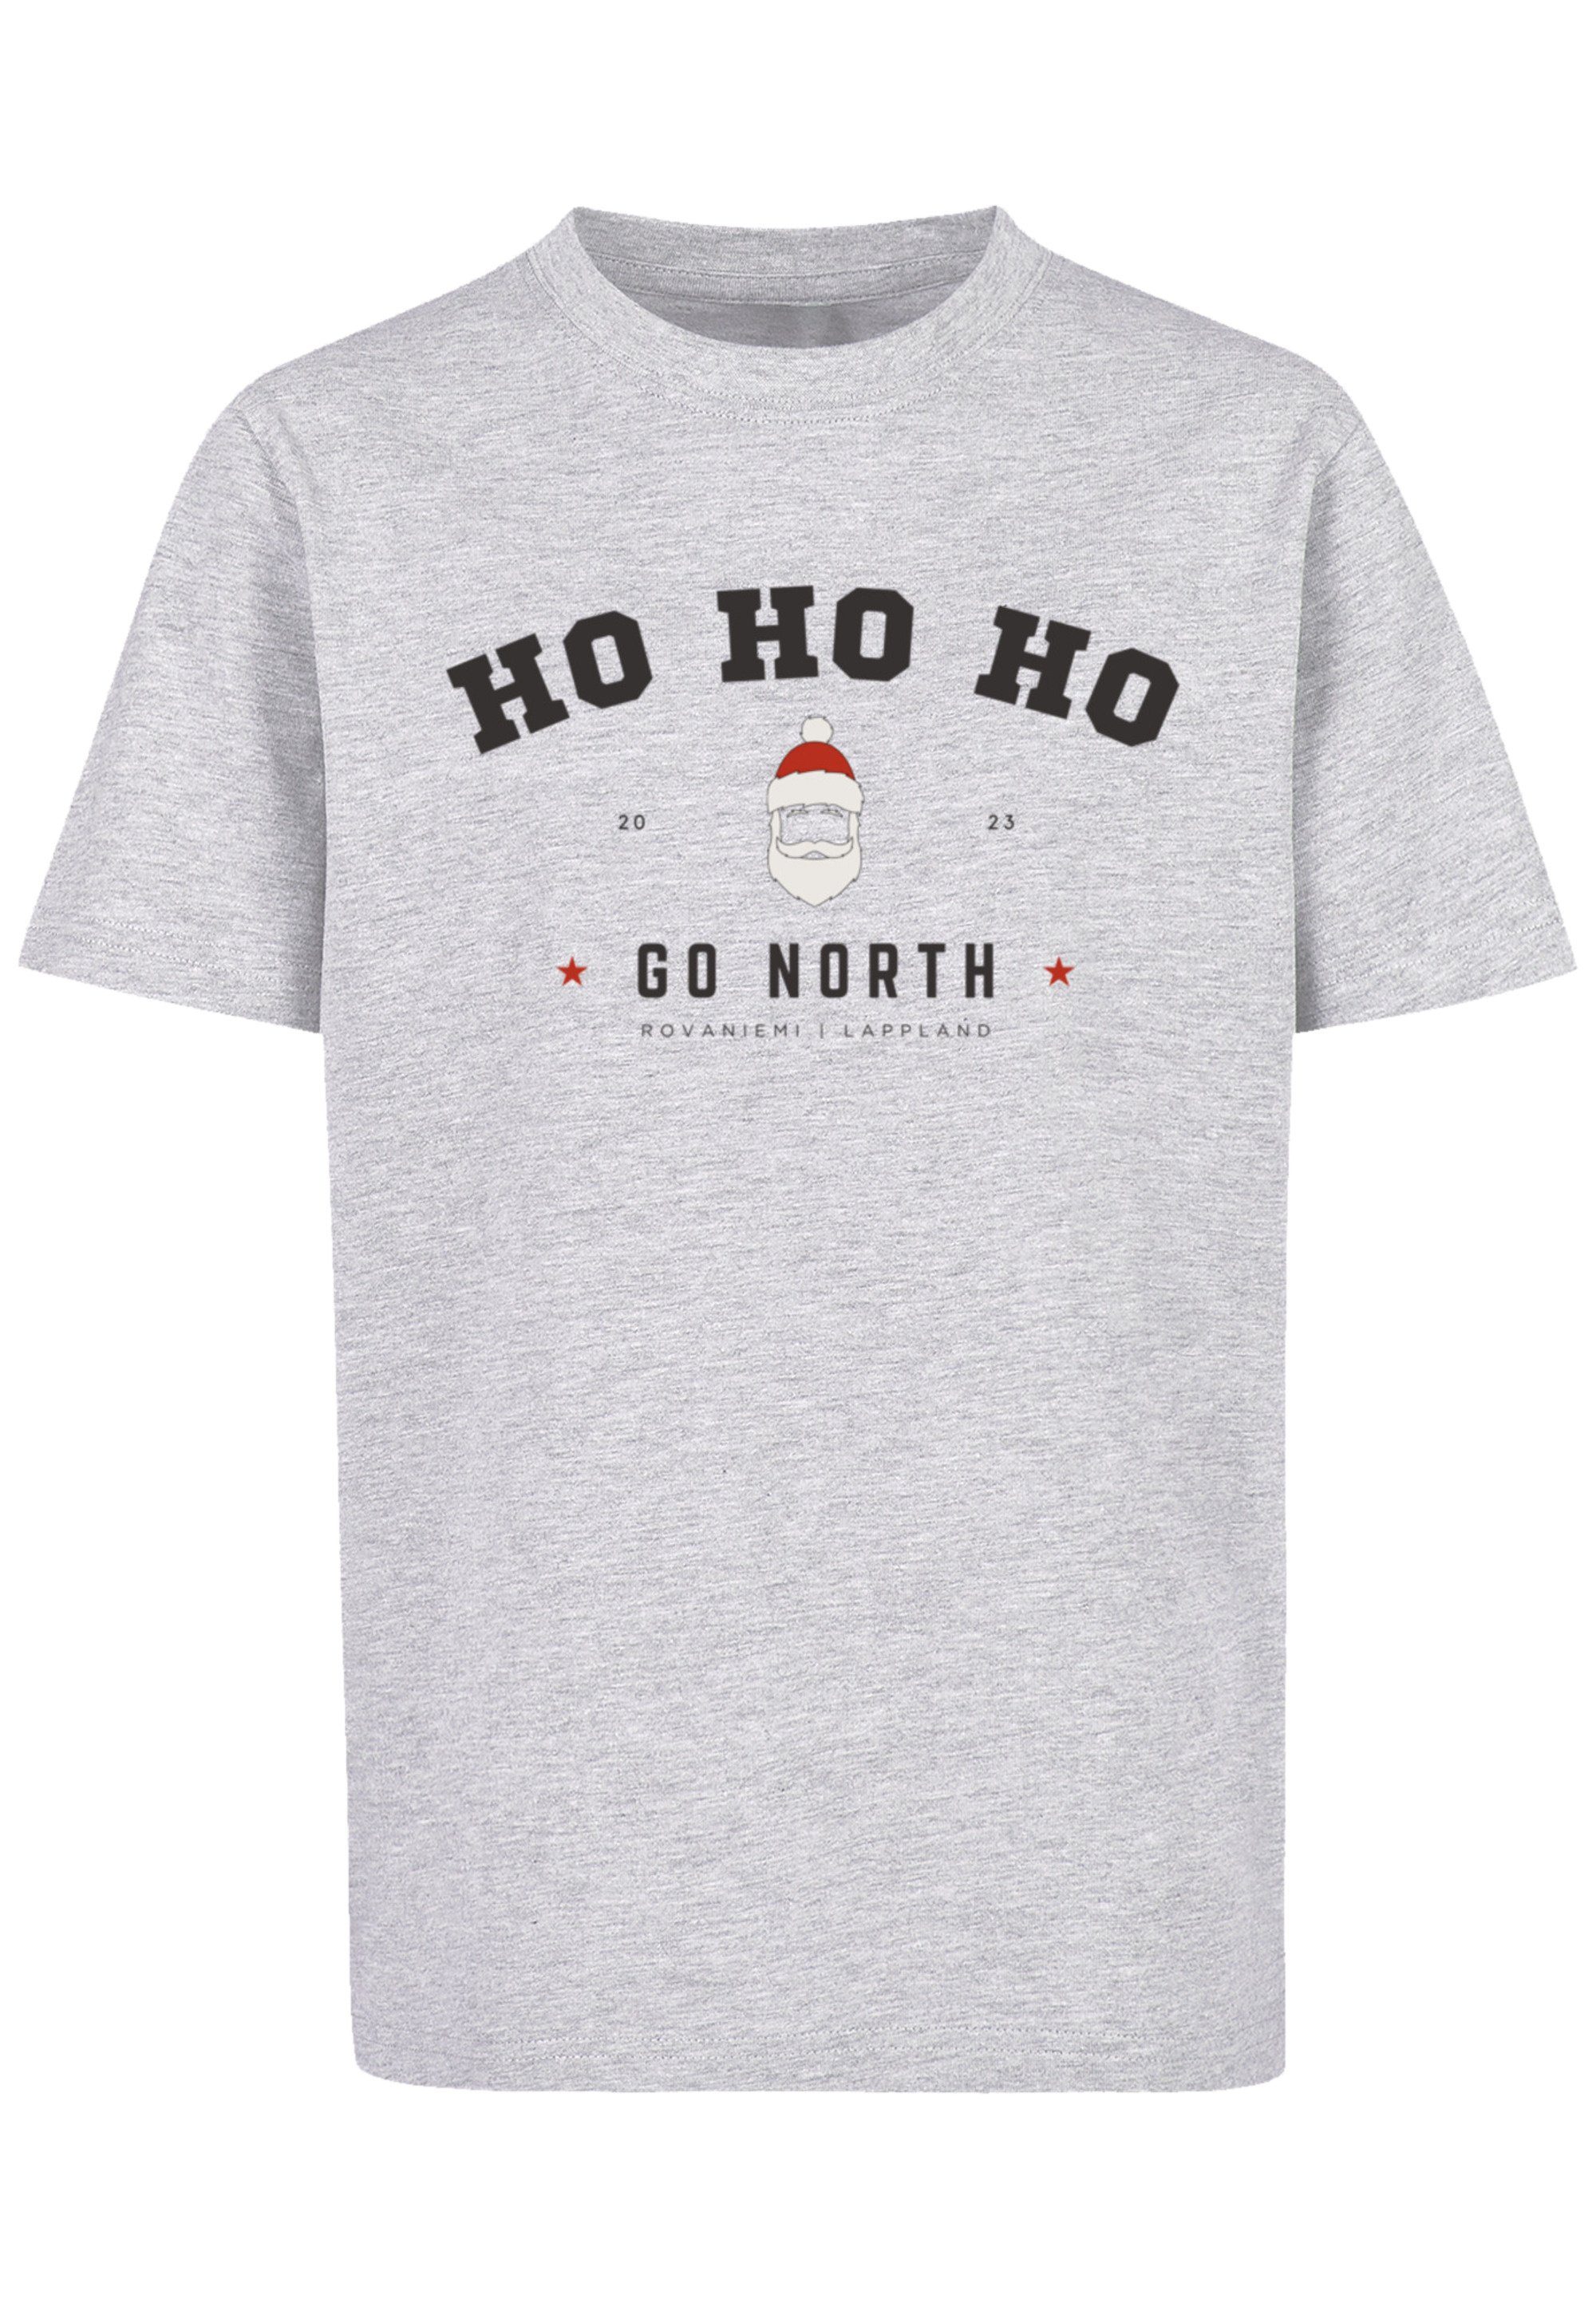 F4NT4STIC T-Shirt Ho Ho Ho Santa Claus Weihnachten Weihnachten, Geschenk,  Logo, Kids T-Shirt mit Weihnachtsdesign